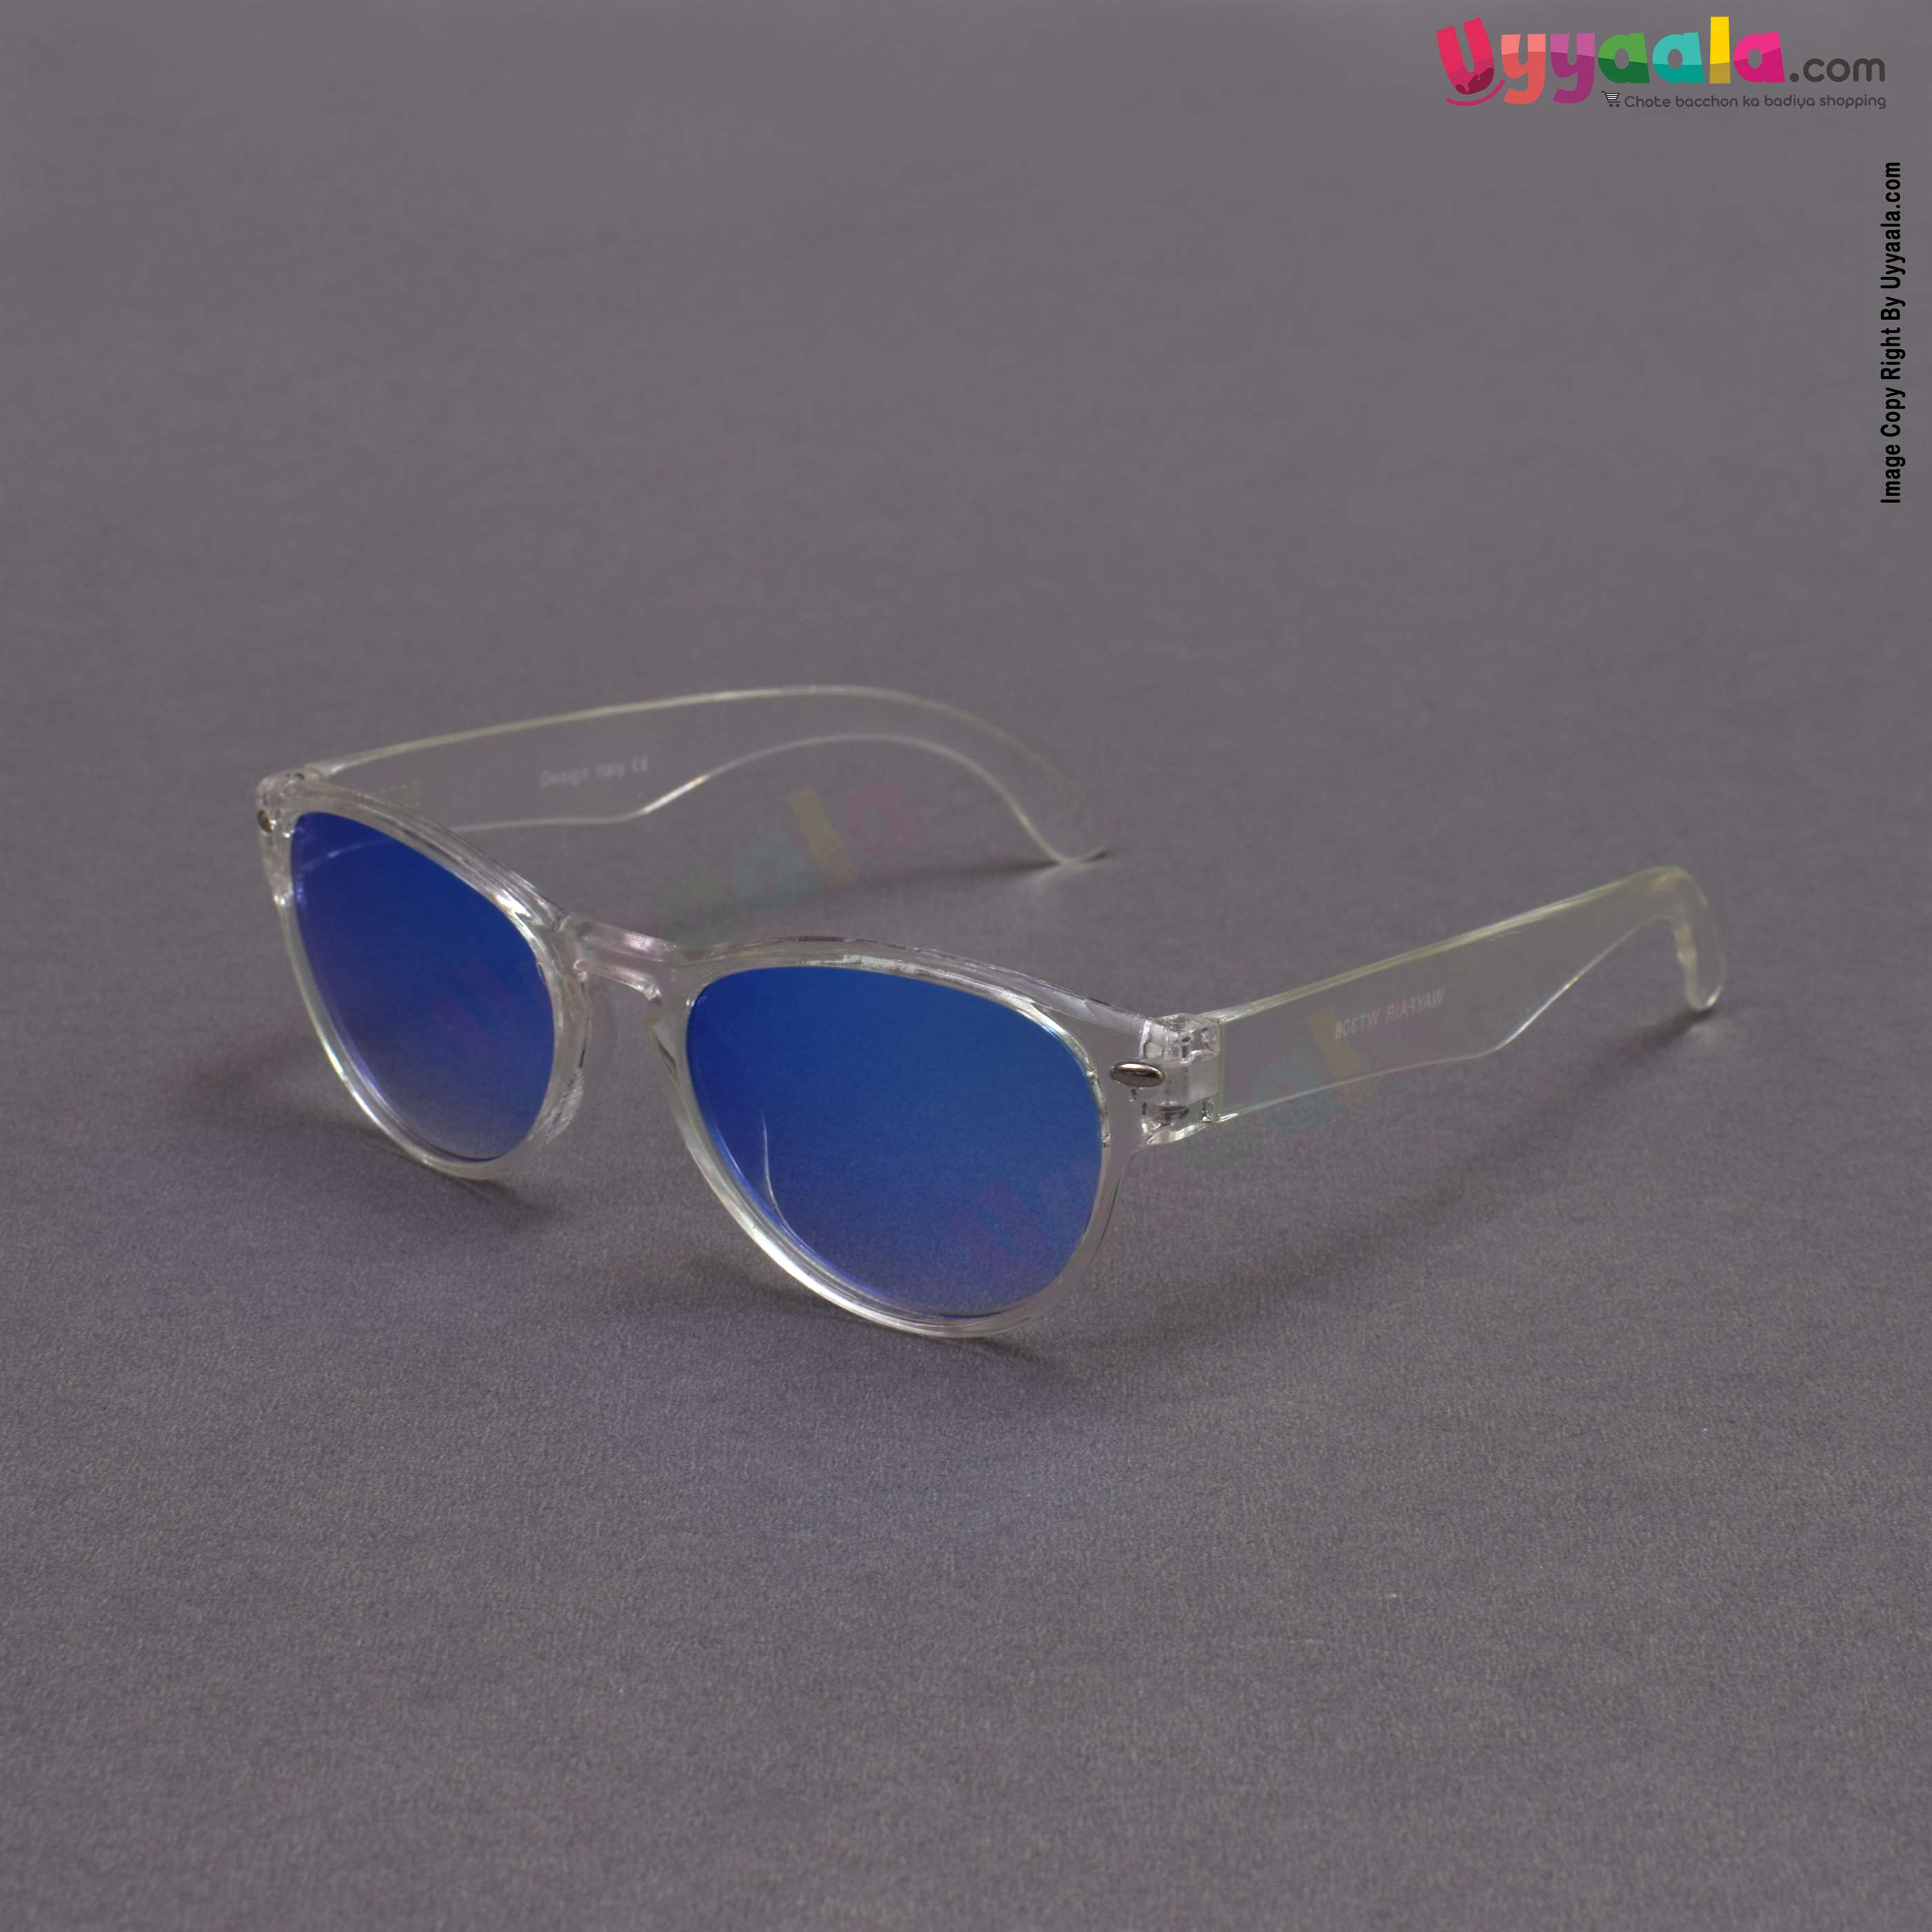 Trendy cat-eye blue shade sunglasses for kids